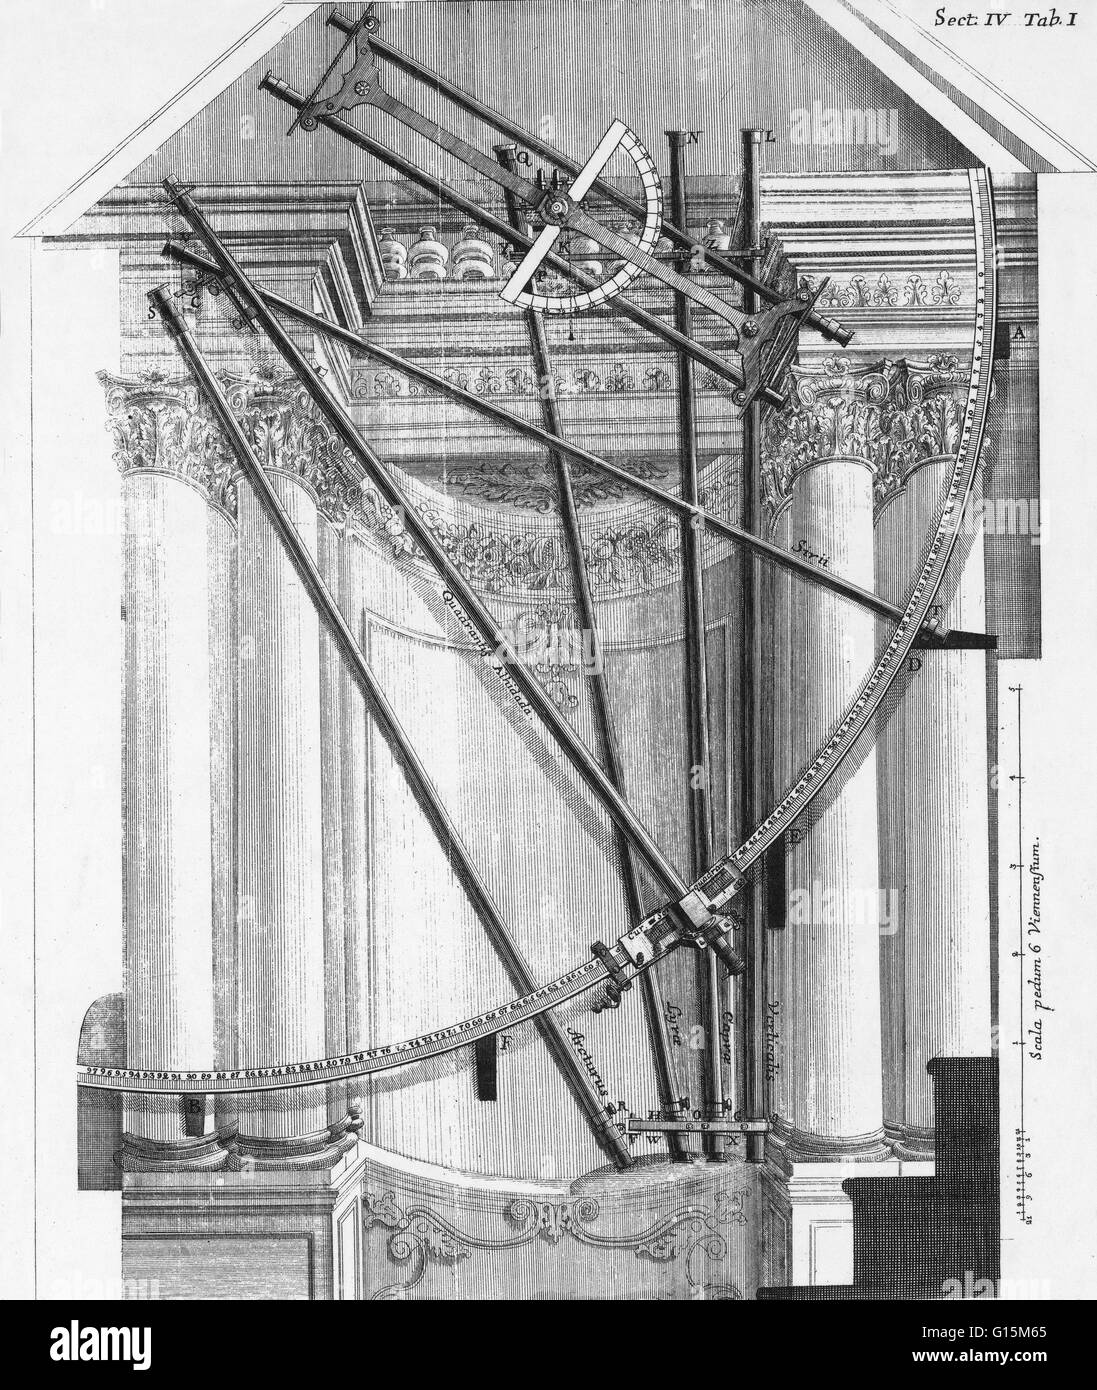 Una incisione di astronomia e strumenti scientifici presso il primo Osservatorio Viennese dal 1745, che era il meglio attrezzato osservatorio del suo tempo. Da 'De Astronomica Specula Domestica et organico apparatu astronomico libri duo" di Giovanni Jacopo Foto Stock